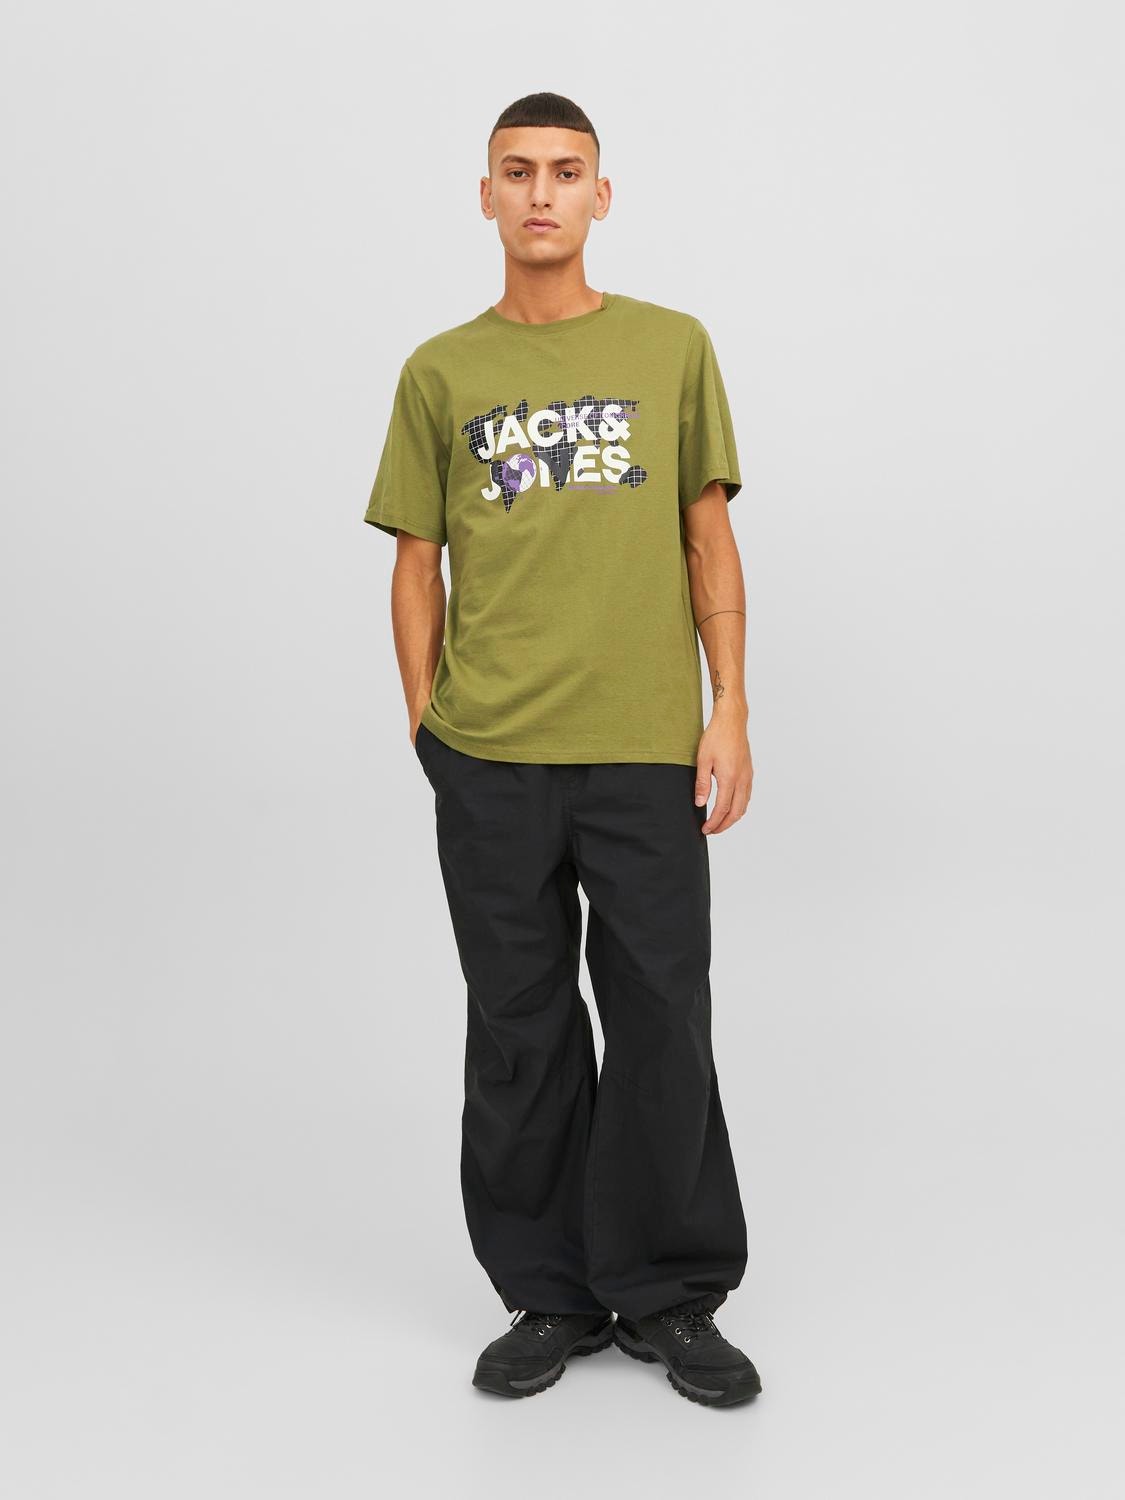 Jack & Jones Logo O-hals T-skjorte -Olive Branch - 12240276